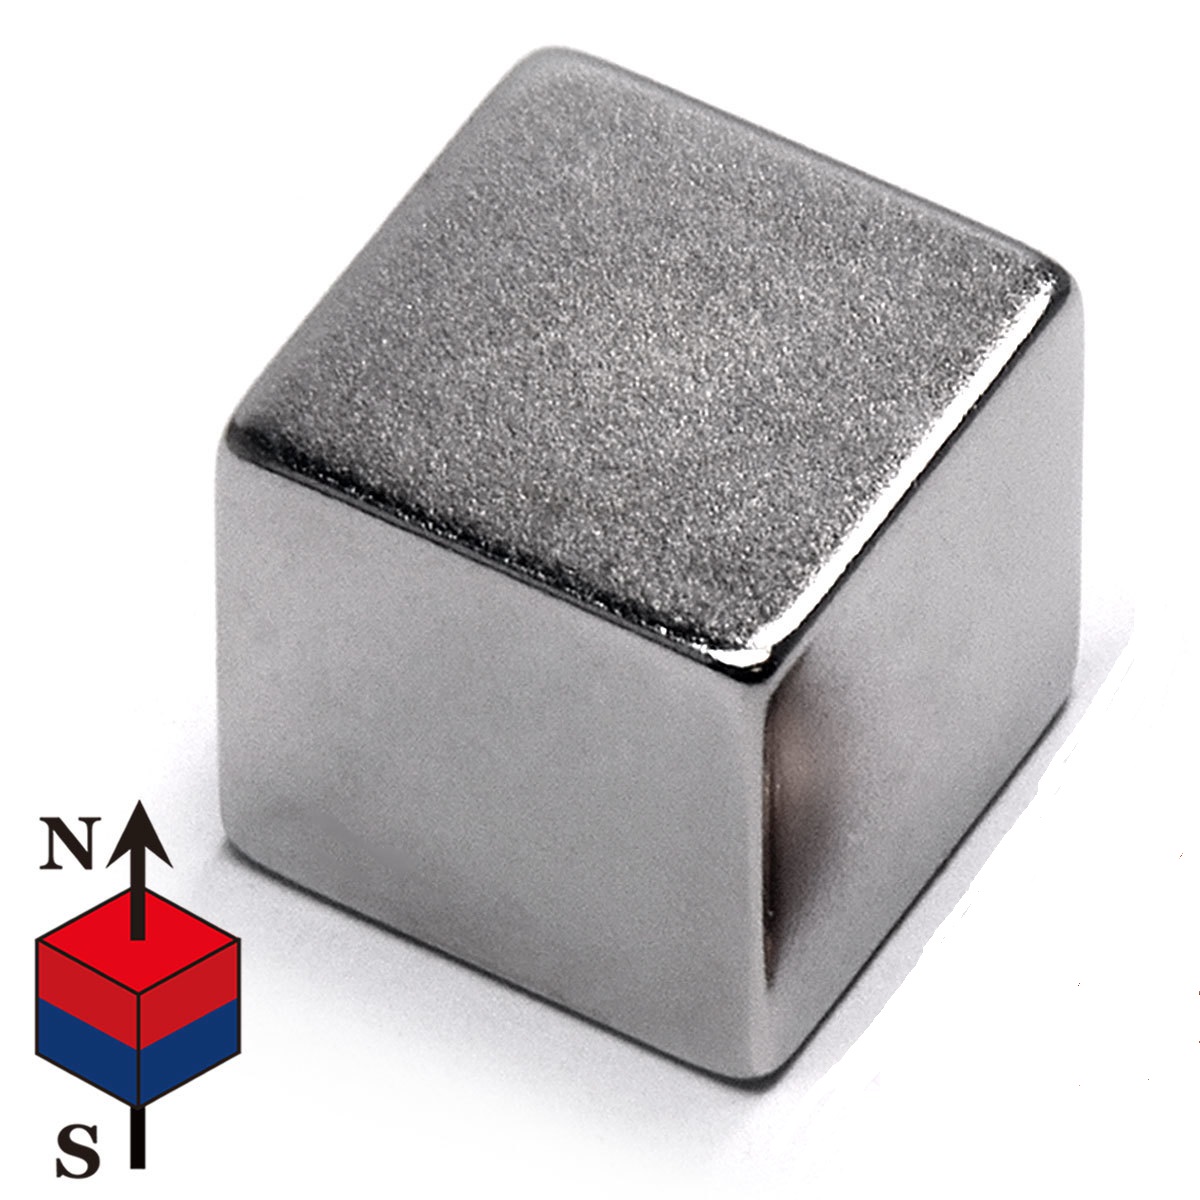 NWürfel-Magnete, Würfelmagnete, Würfel-Magnet, Würfelmagnet, Magnetwürfel, Neodym-Magnet, Magnete Würfel für Glasmagnetplatten, Magnettafeln, Whiteboards, Kühlschränke, Neodym Magnete Neo-Magnete quadratisch als Magnetwürfel, Dauermagnete, Supermagnete